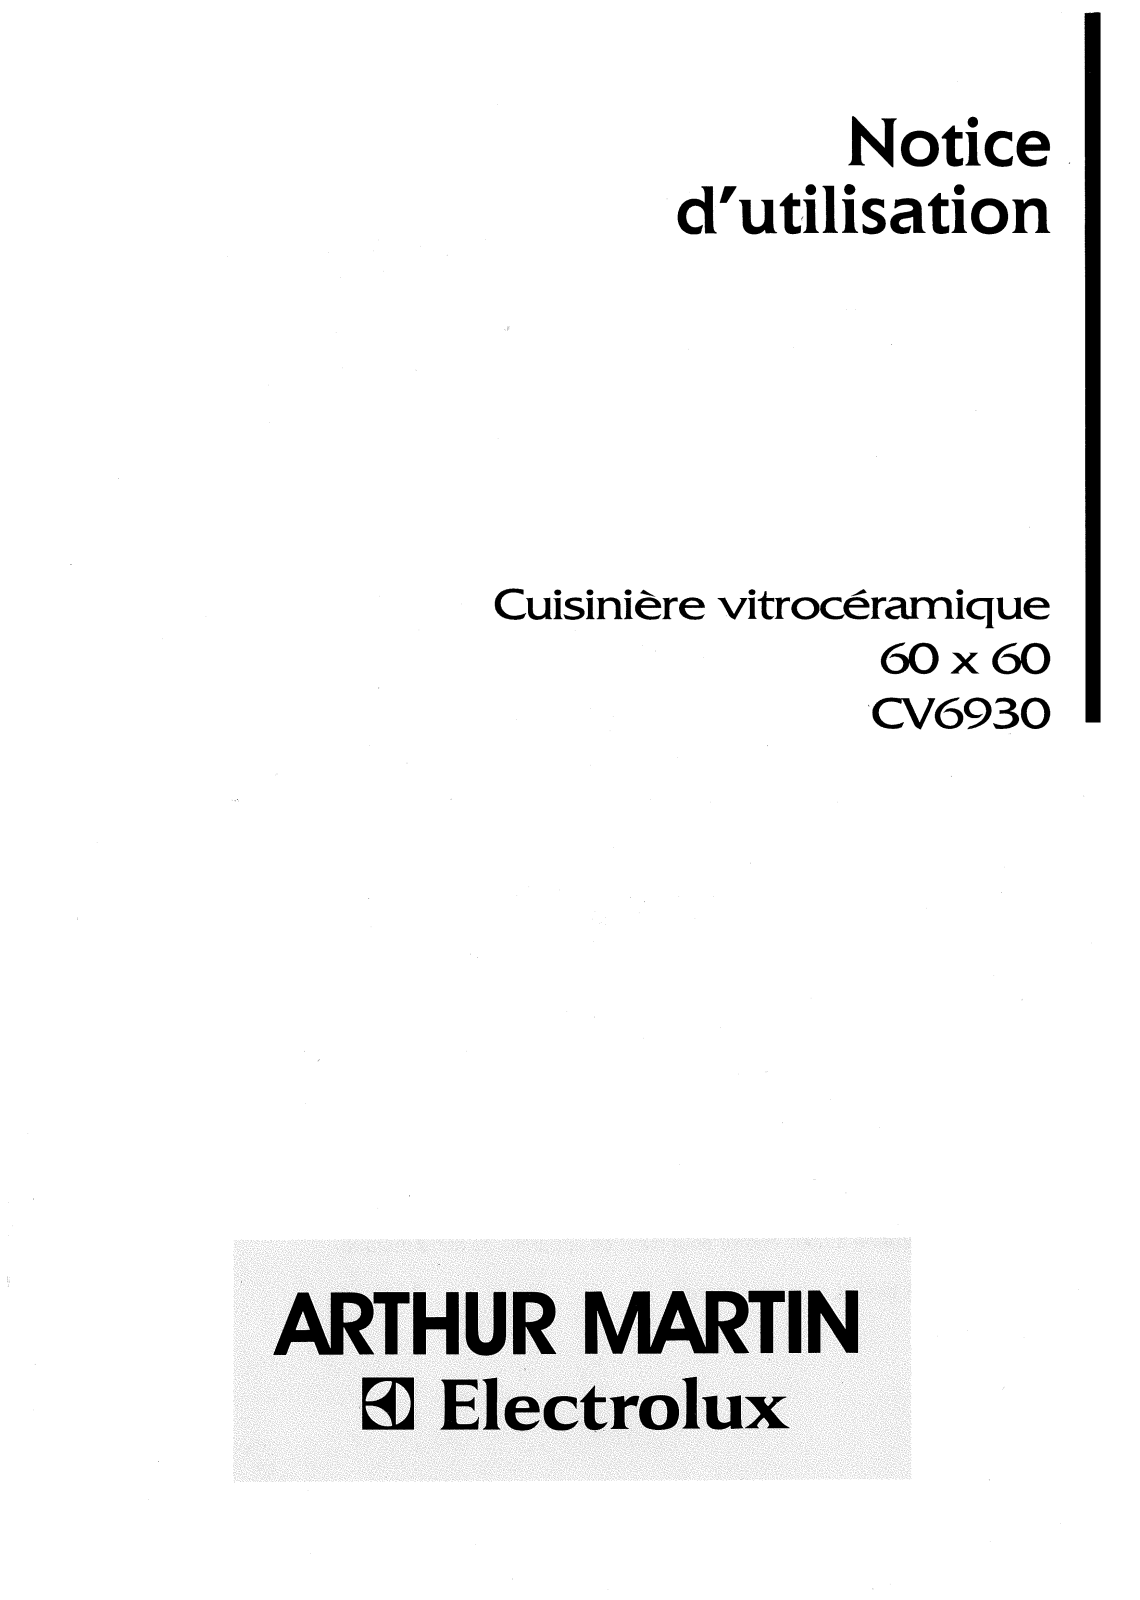 Arthur martin CV6930 User Manual